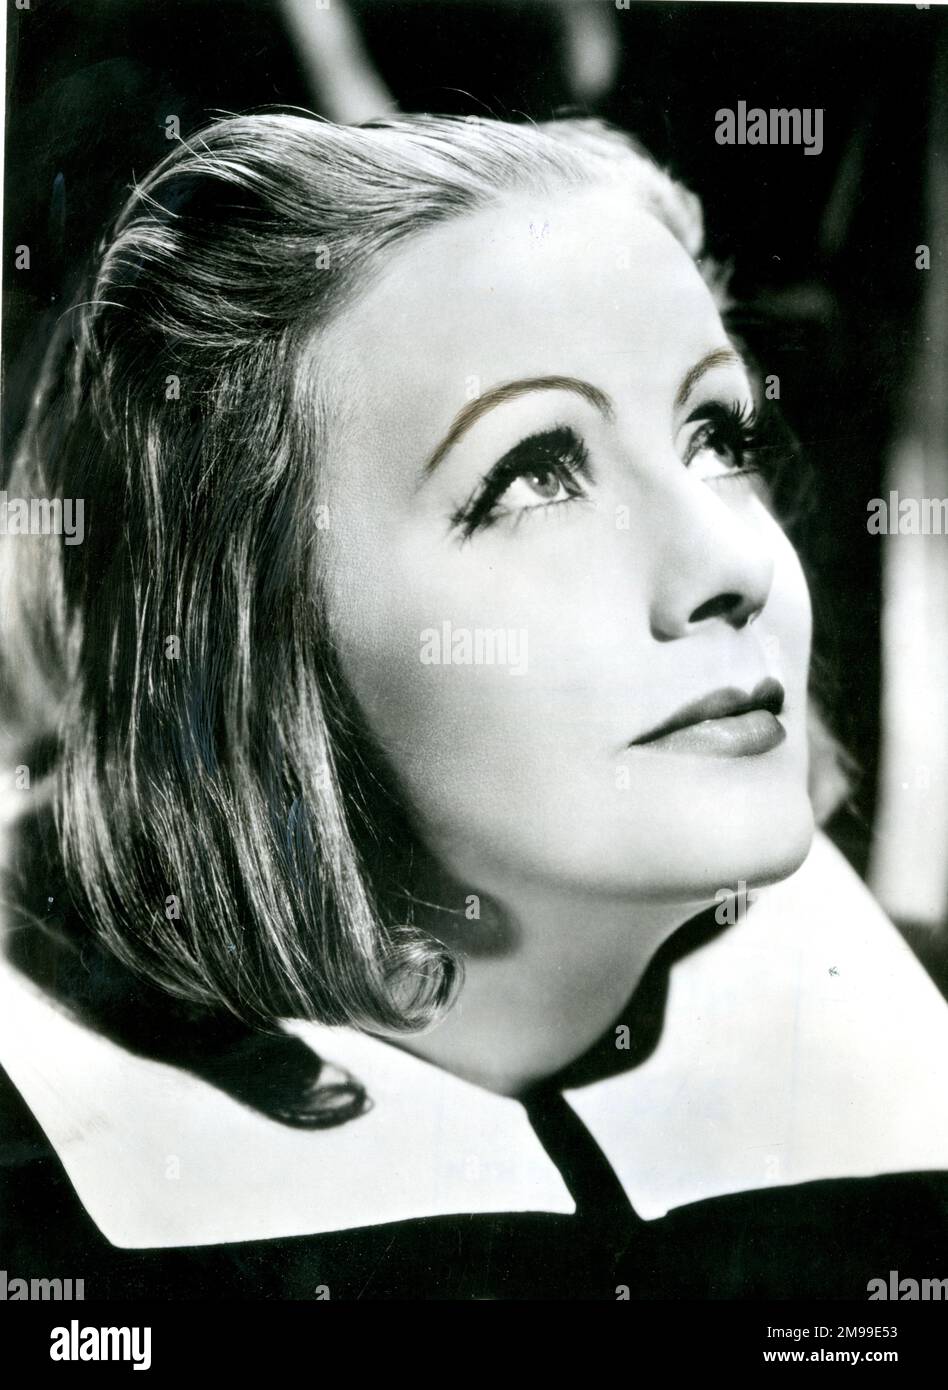 GRETA Garbo (Greta Lovisa Gustafsson, 1905-1990), actrice suédoise-américaine. Vu ici dans le rôle titre de la reine Christina. Banque D'Images